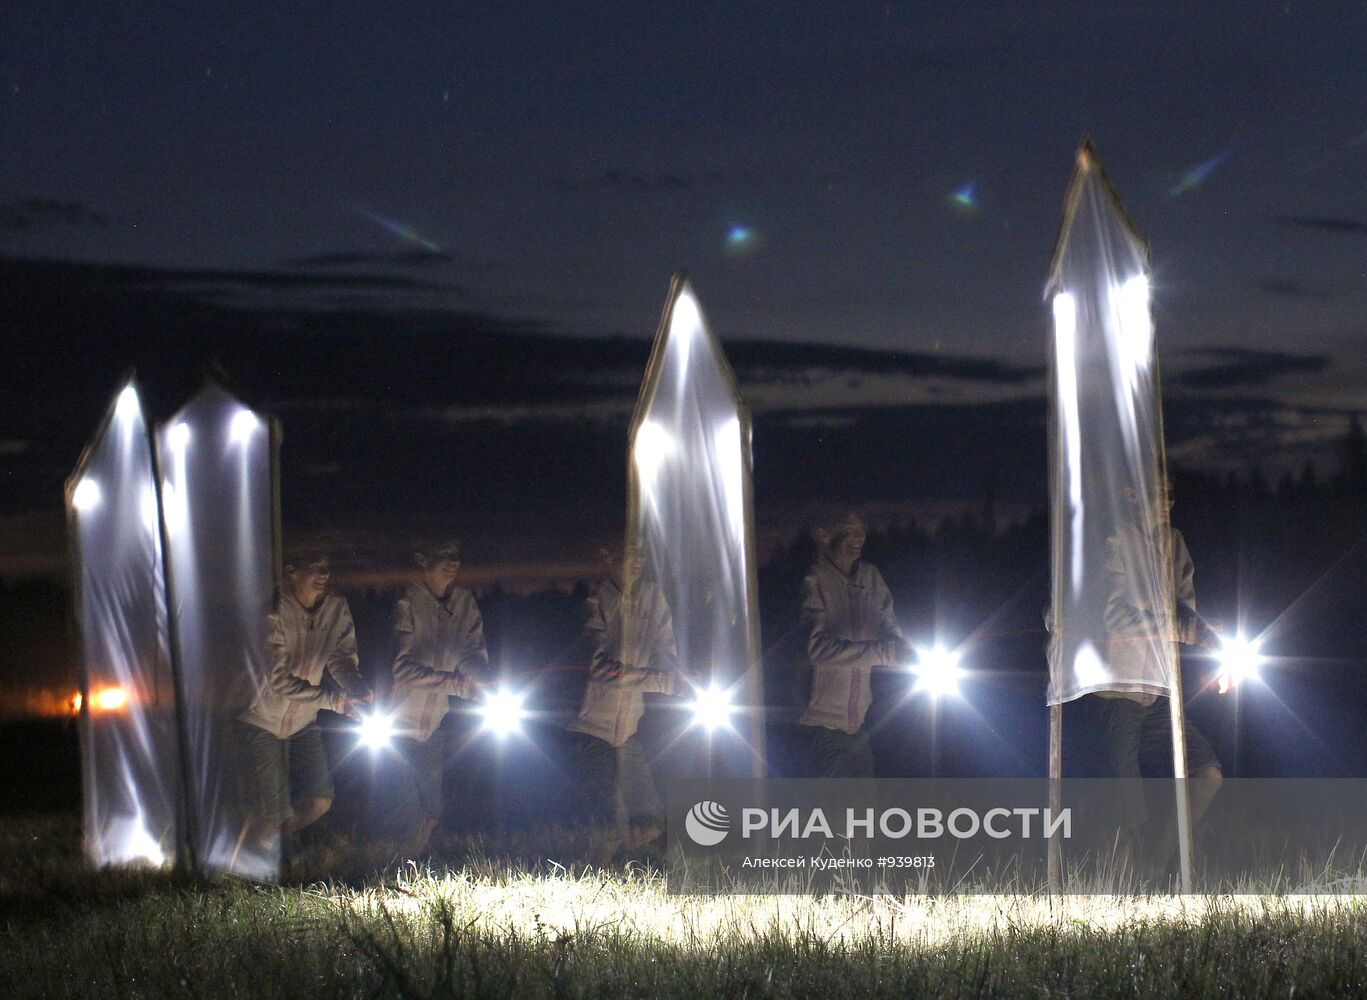 Фестиваль "Архстояние-2011" в Калужской области